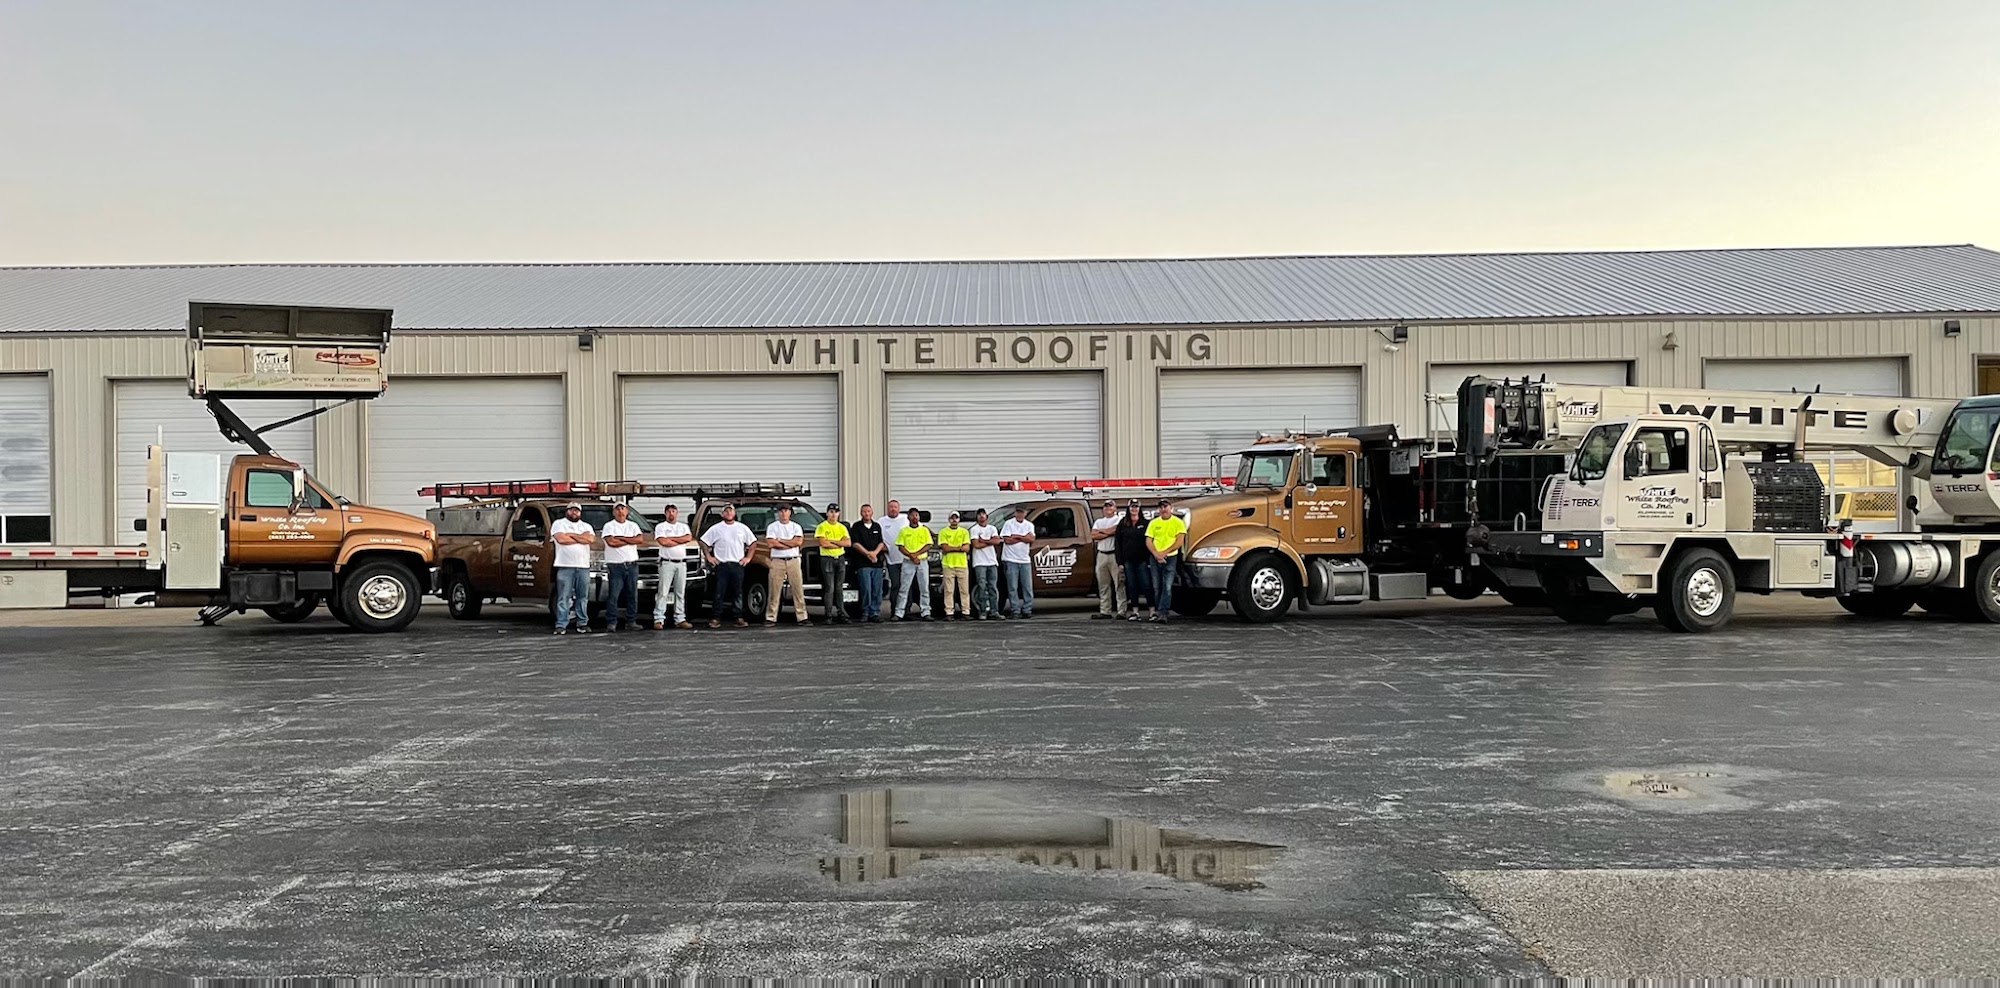 White Roofing Company, Inc. 220 N 9th Ave, Eldridge Iowa 52748